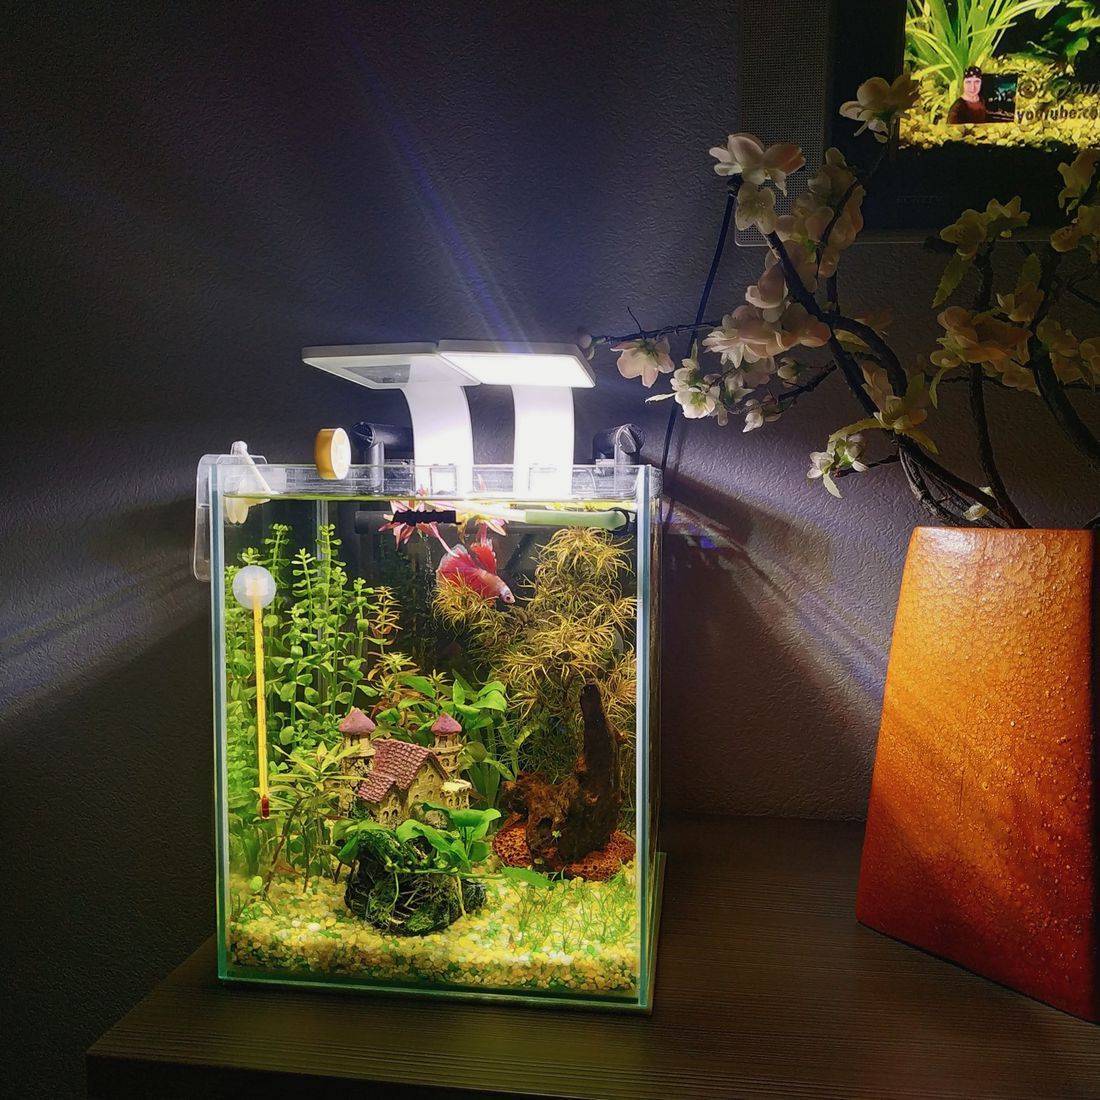 Нано аквариум или все о кубиках: запуск, оформление, выбор рыбок и растений, фото-видео обзор